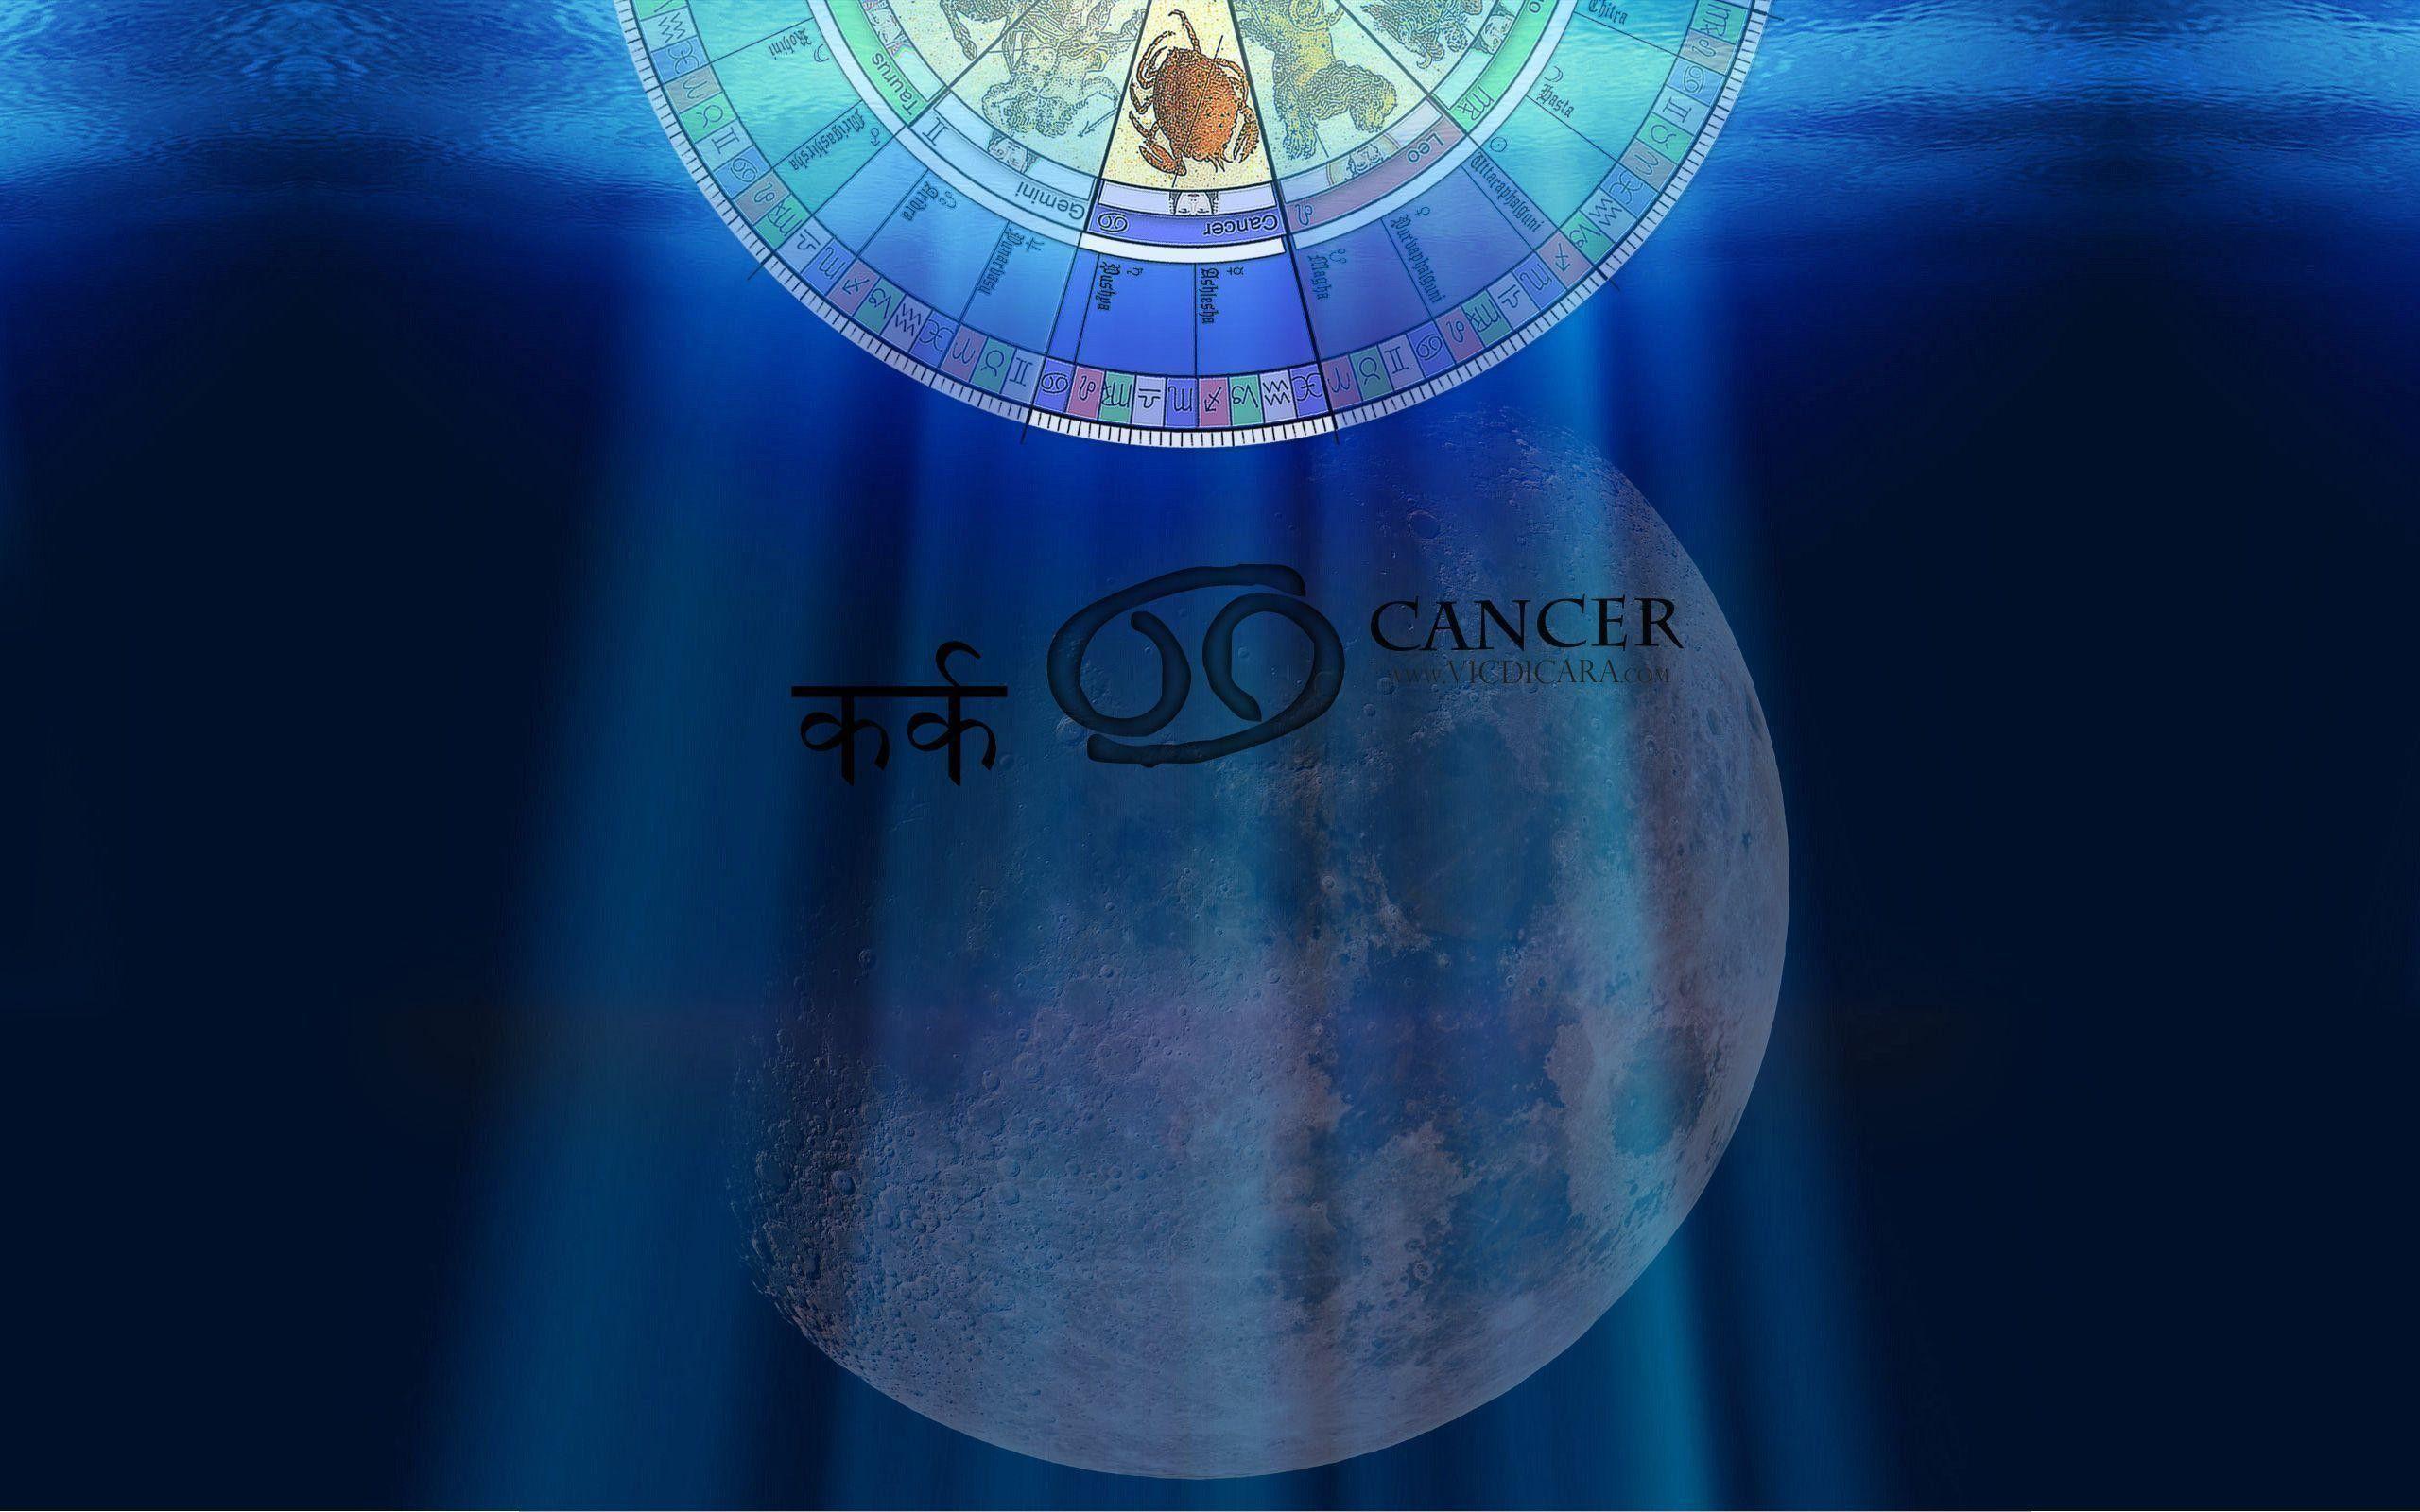 Astrology Wallpaper